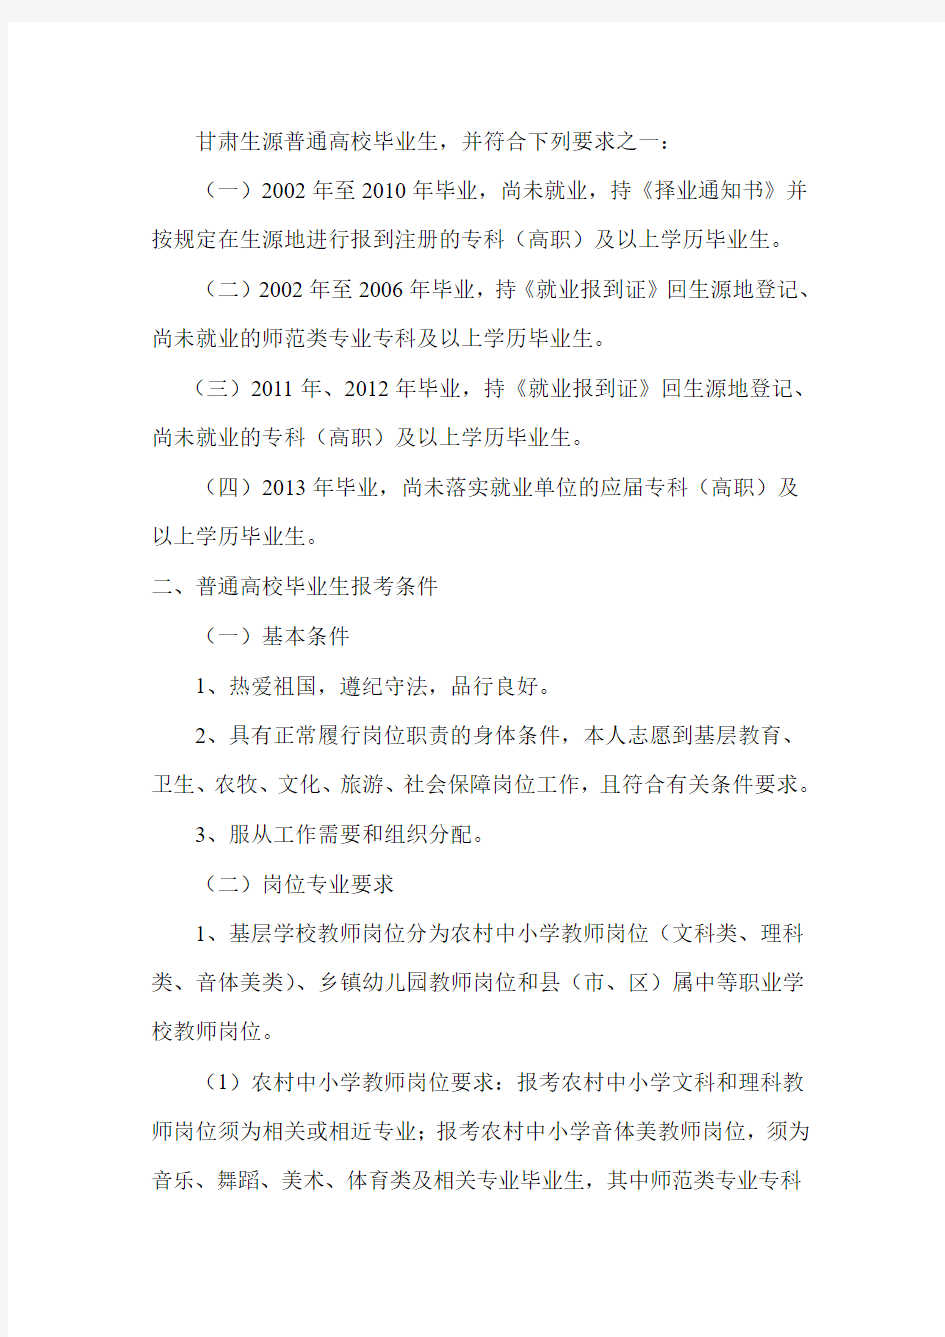 2013年甘肃省一万名招考公告